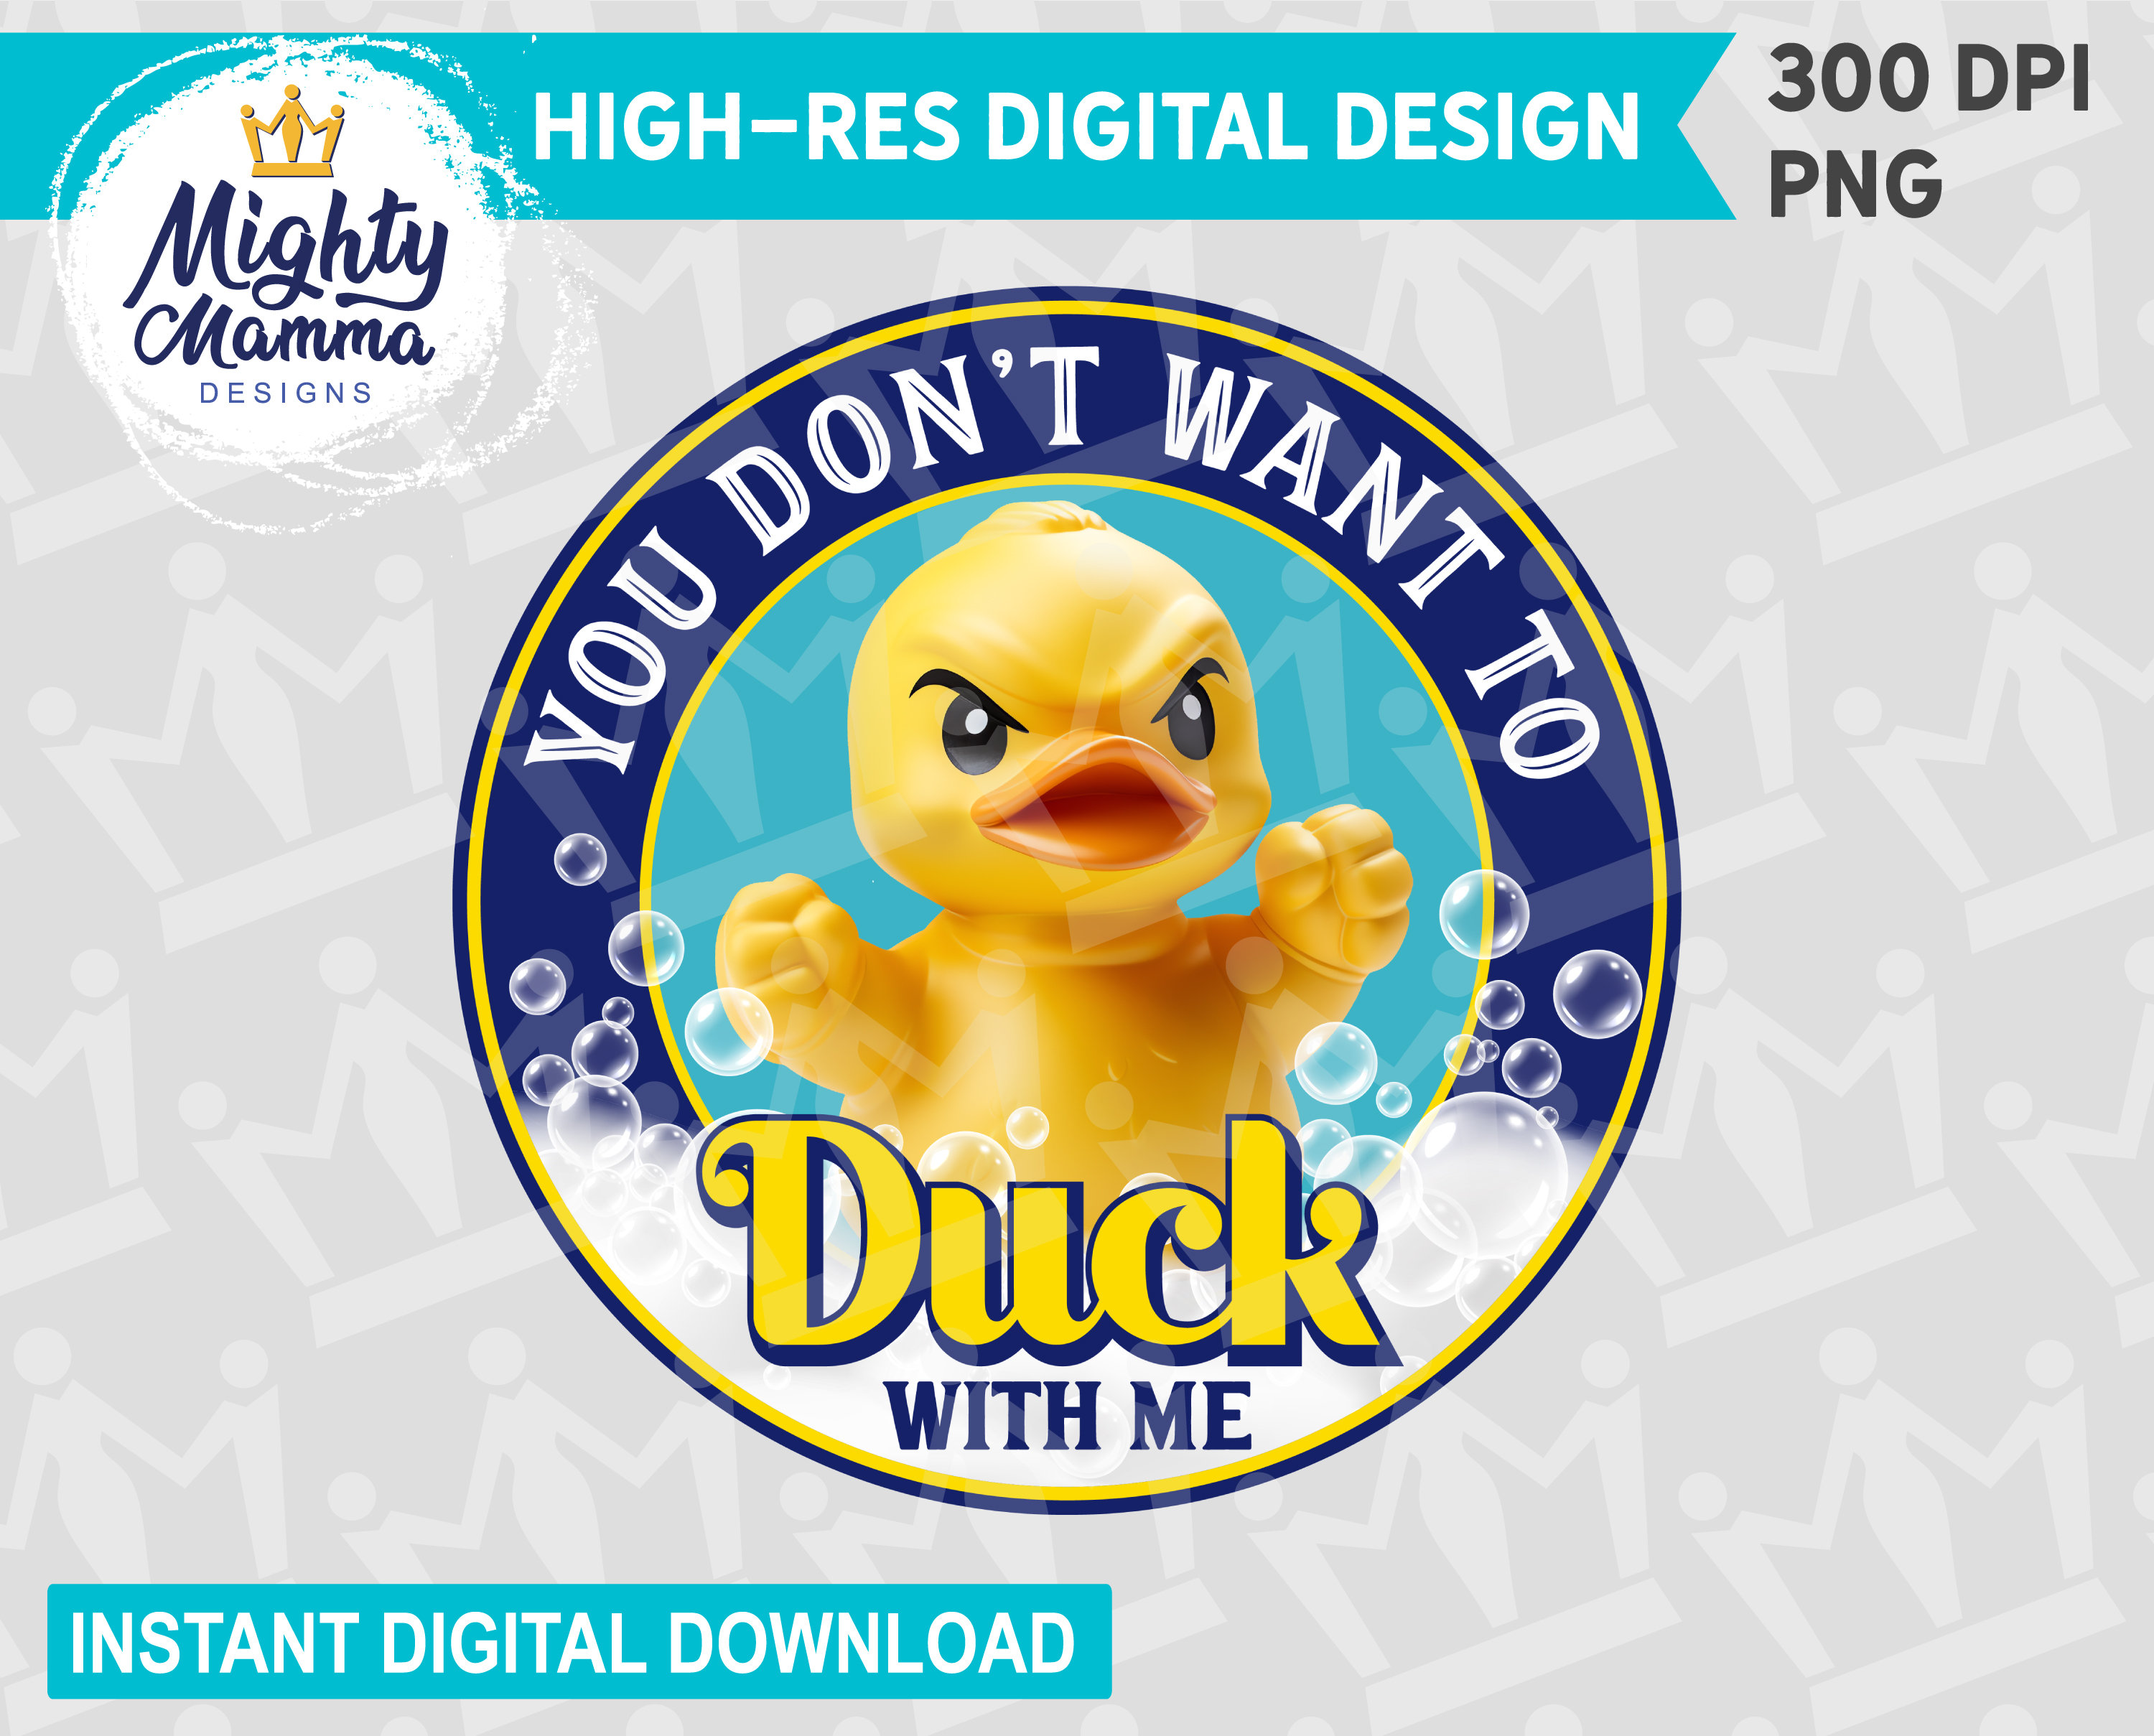 Mighty Ducks Cartoon Series Disney Afternoon Waterproof 